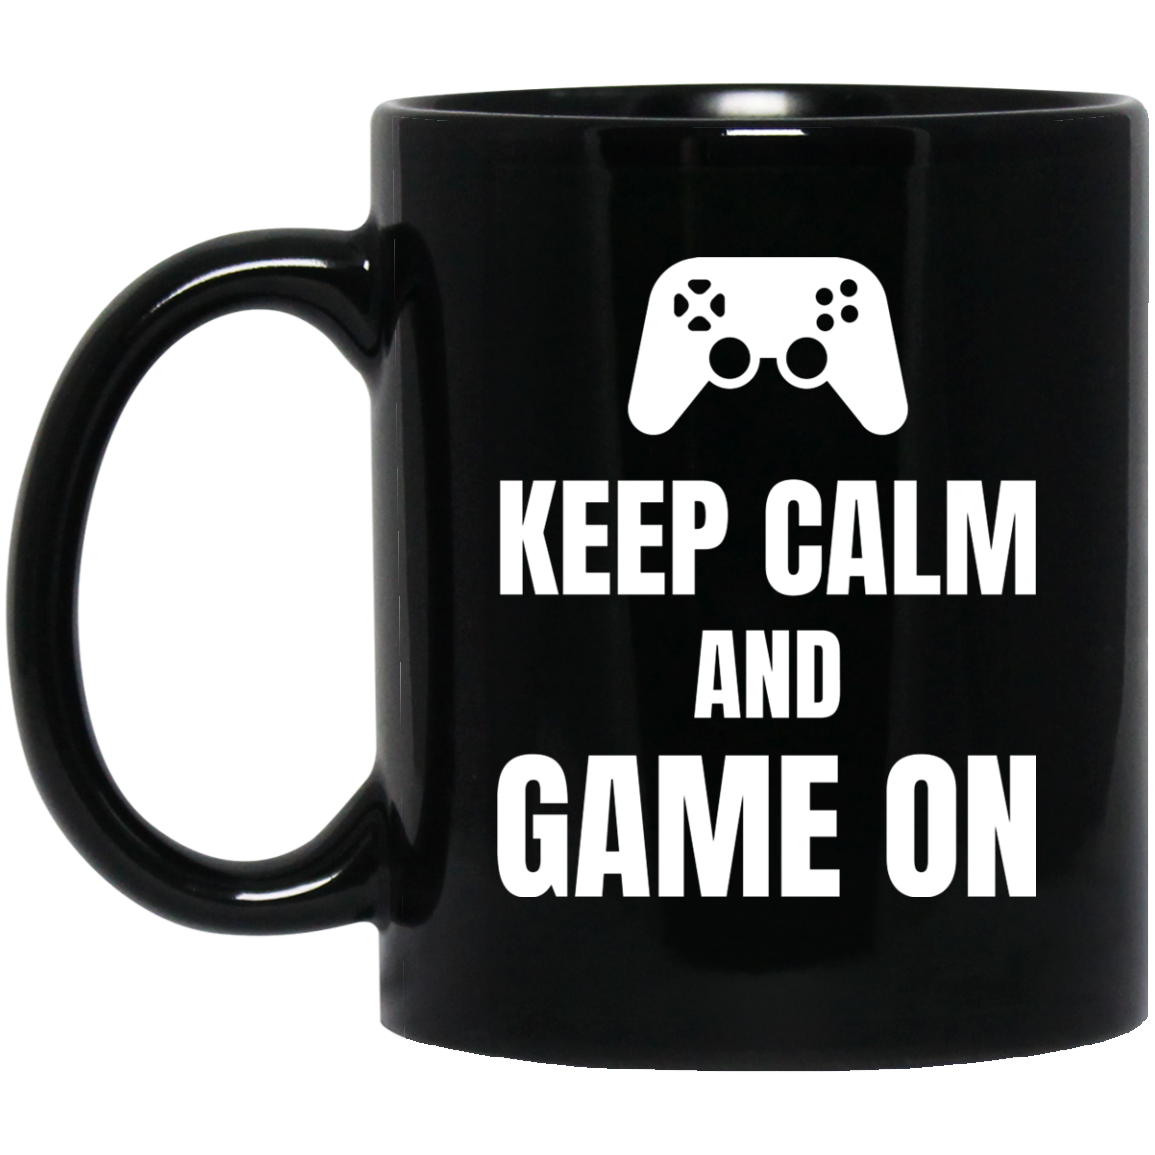 Keep Calm And Game On 11 oz. Black Mug